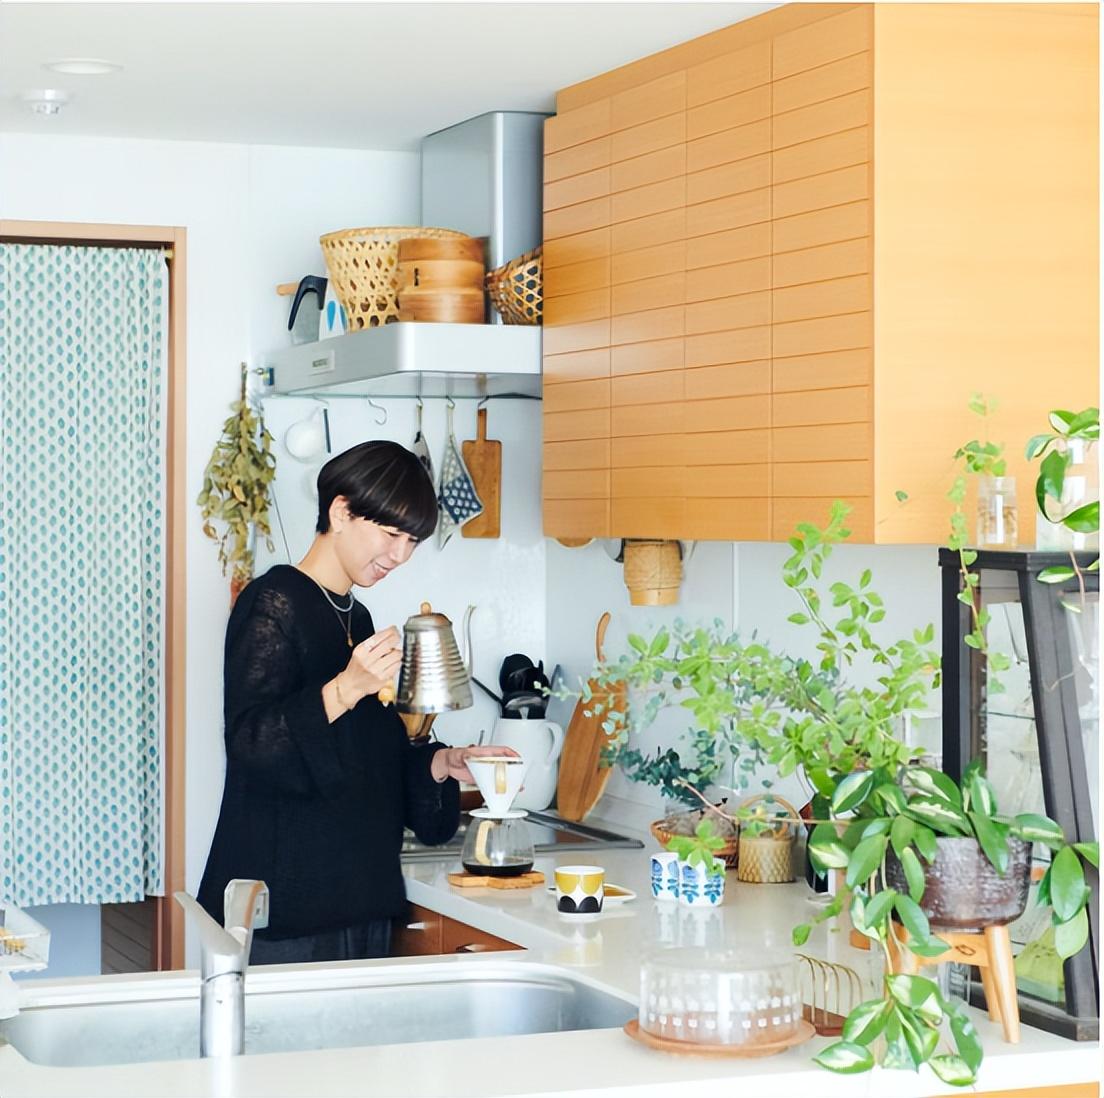 Mẹ Nhật chia sẻ 3 mẹo dọn dẹp nhà cửa, áp dụng đúng cách bạn chỉ mất 5 phút để làm sạch nhà mỗi ngày- Ảnh 1.